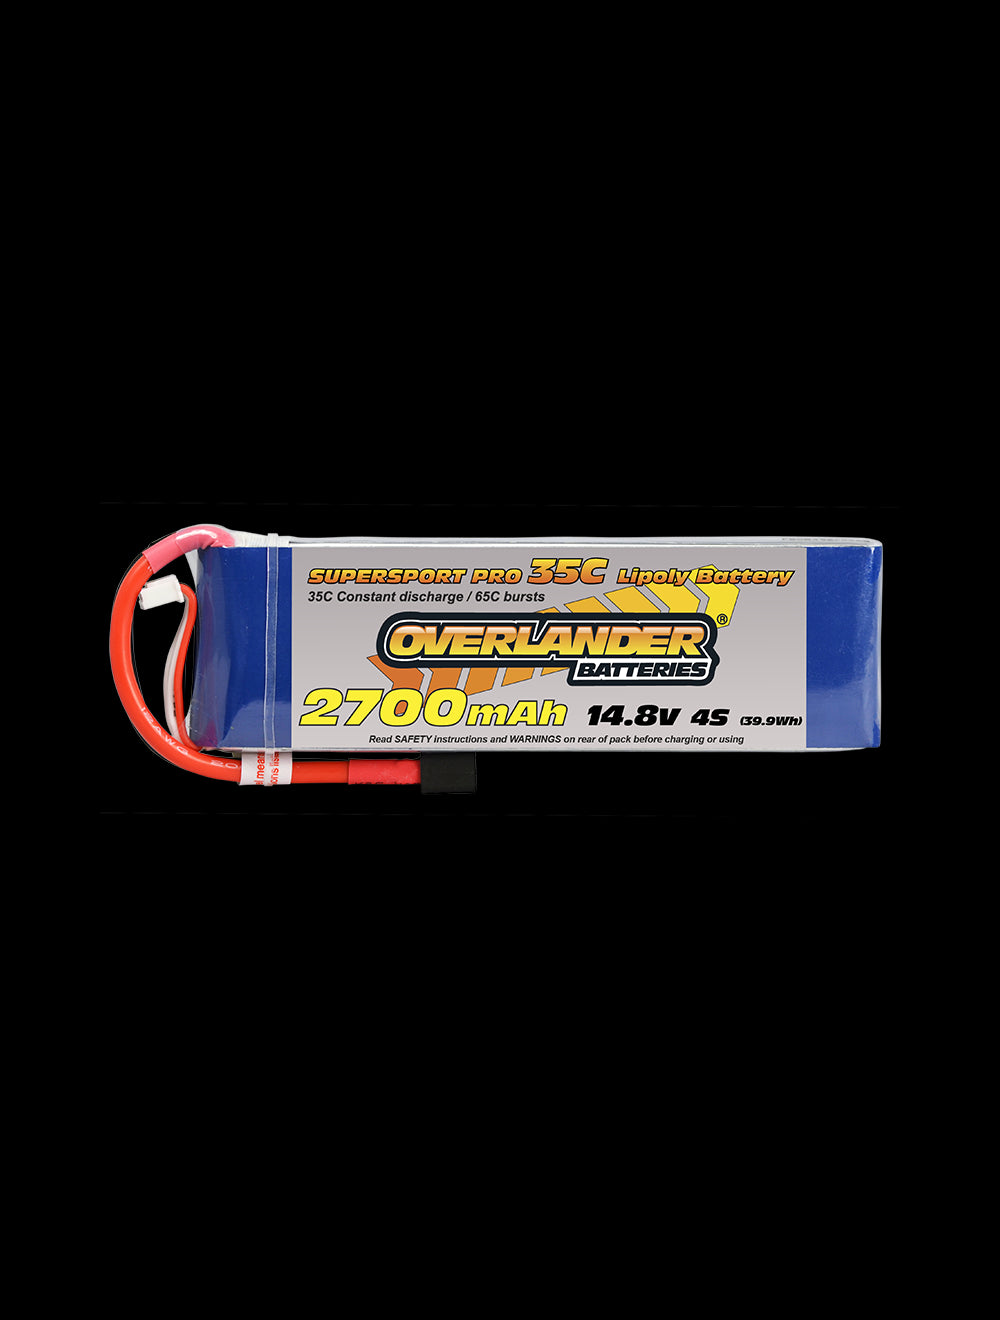 Overlander 2700mAh 14.8V 4S 35C Supersport Pro LiPo Battery - EC3 Connector 2481